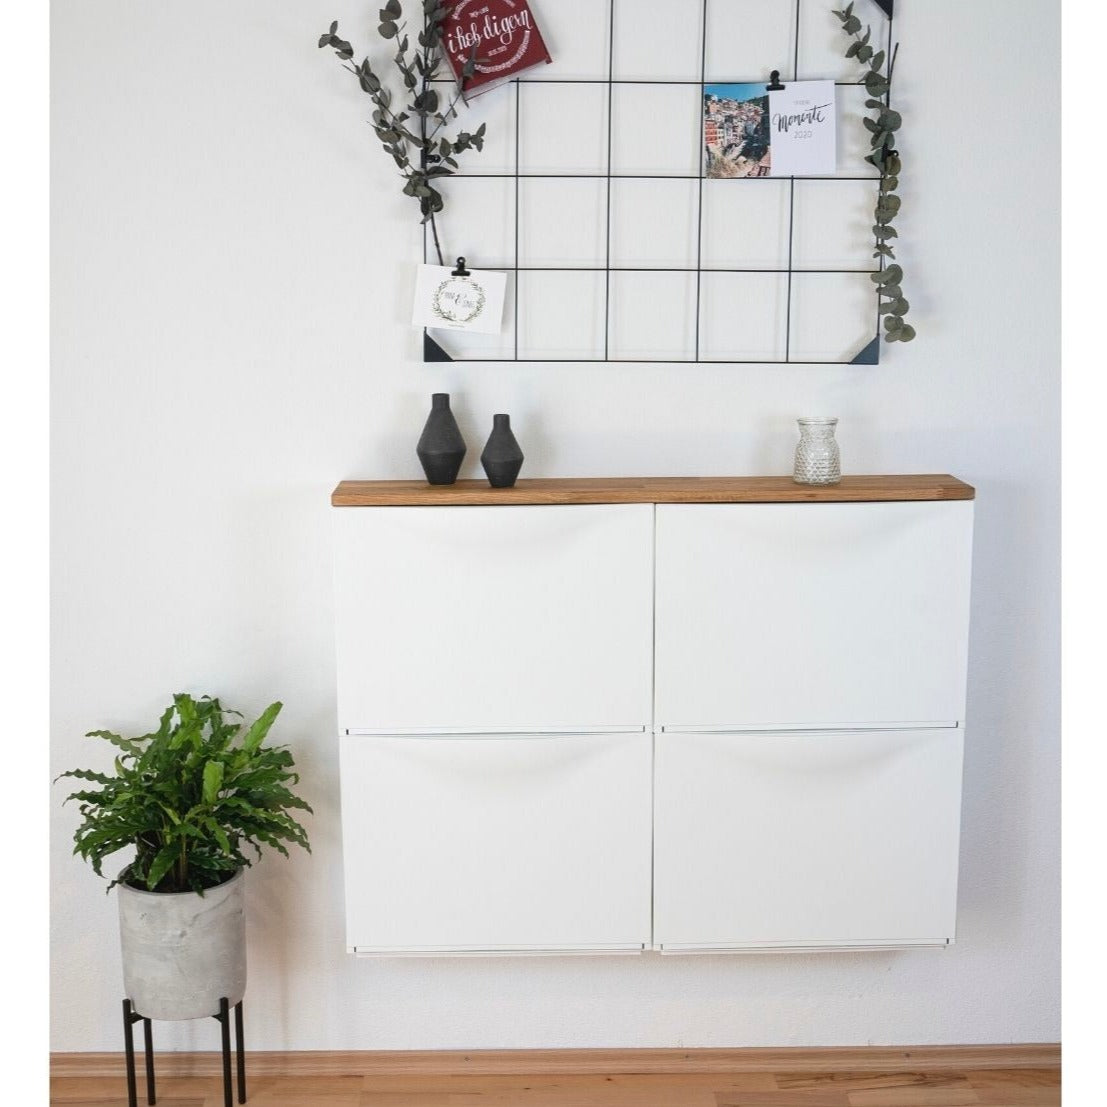 Ikea Trones Schuhschrank 2 Fächer breit mit Deckplatte in Eiche Natur geölt als Wohnbeispiel mit Dekoration